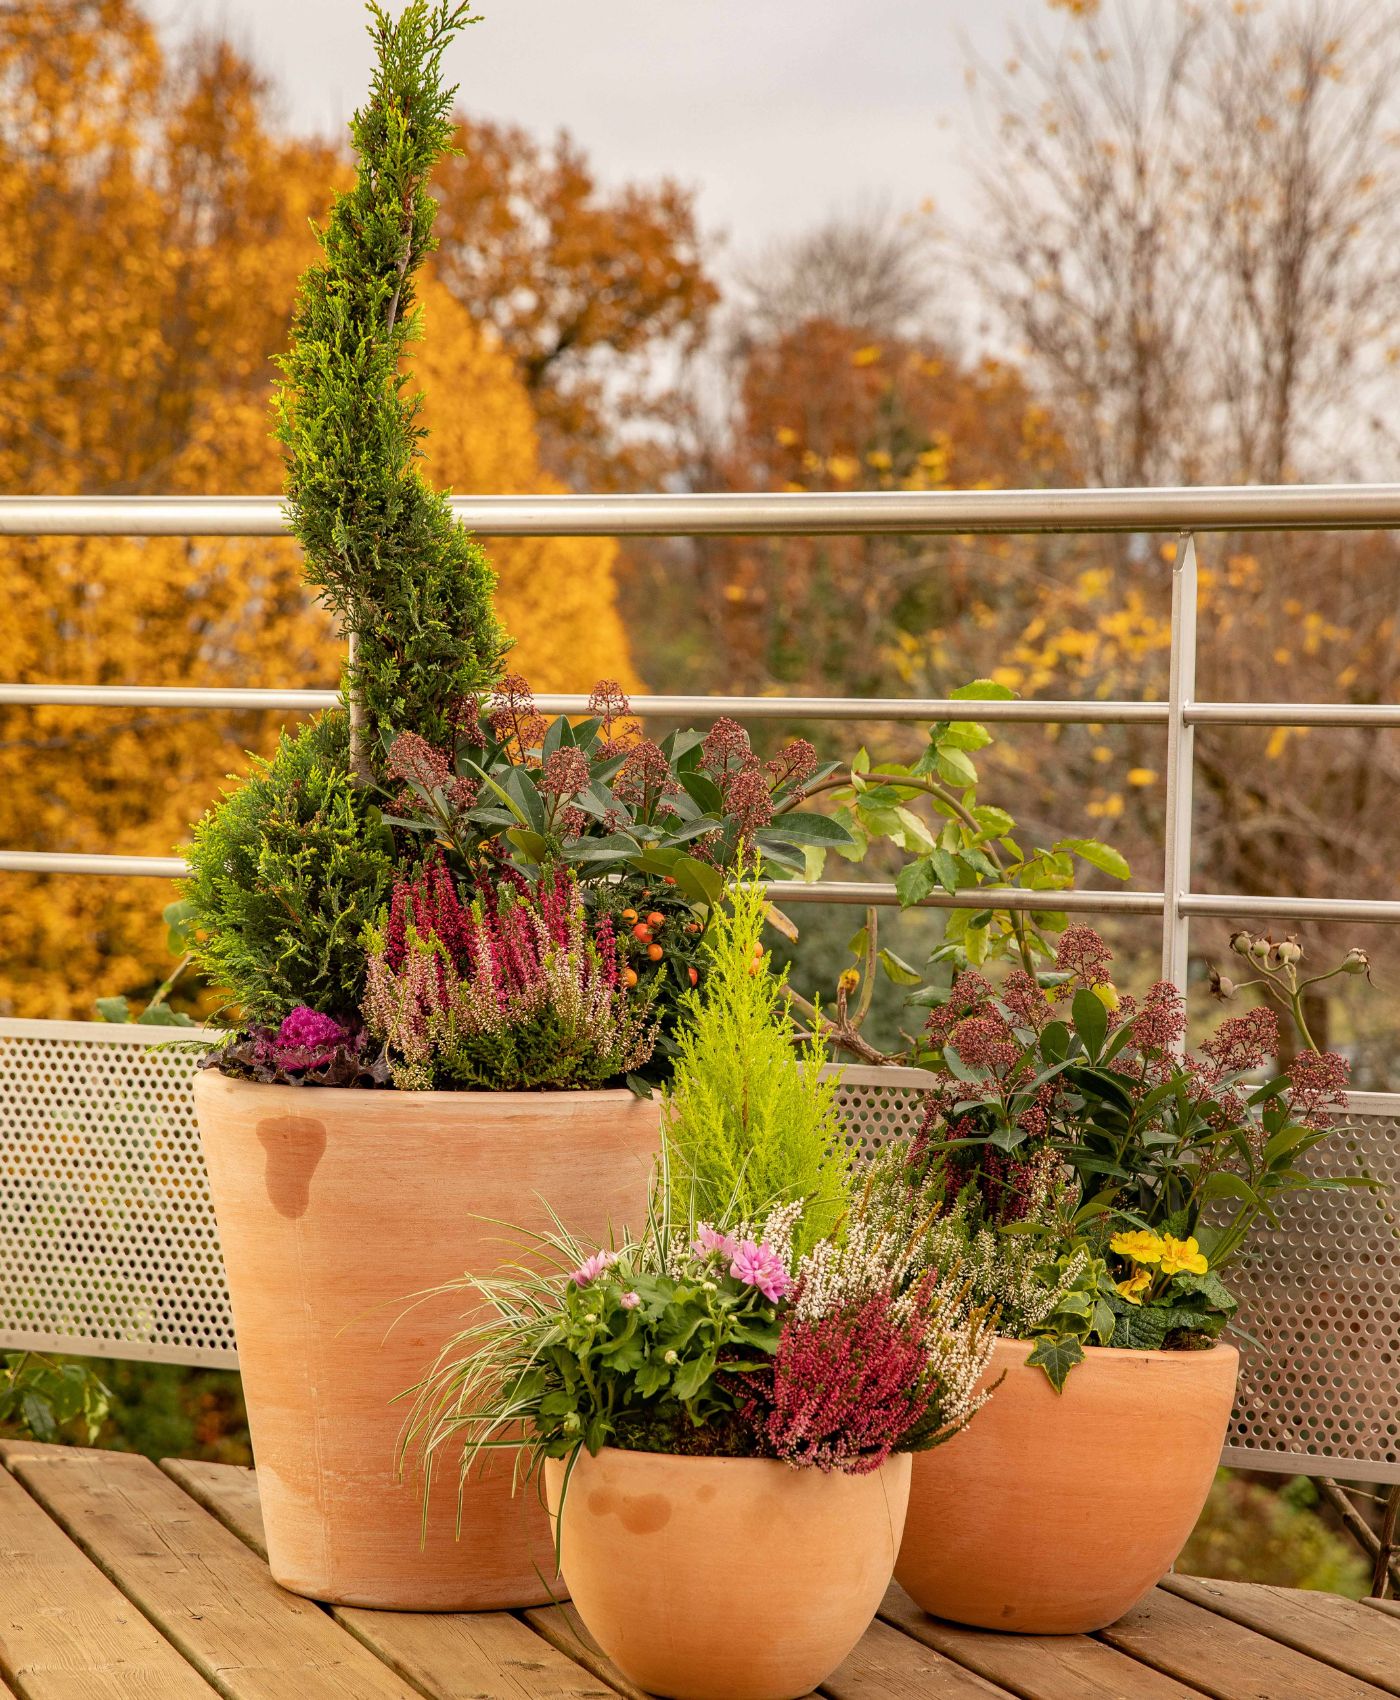 Des arbustes nains dans des pots sur balcon